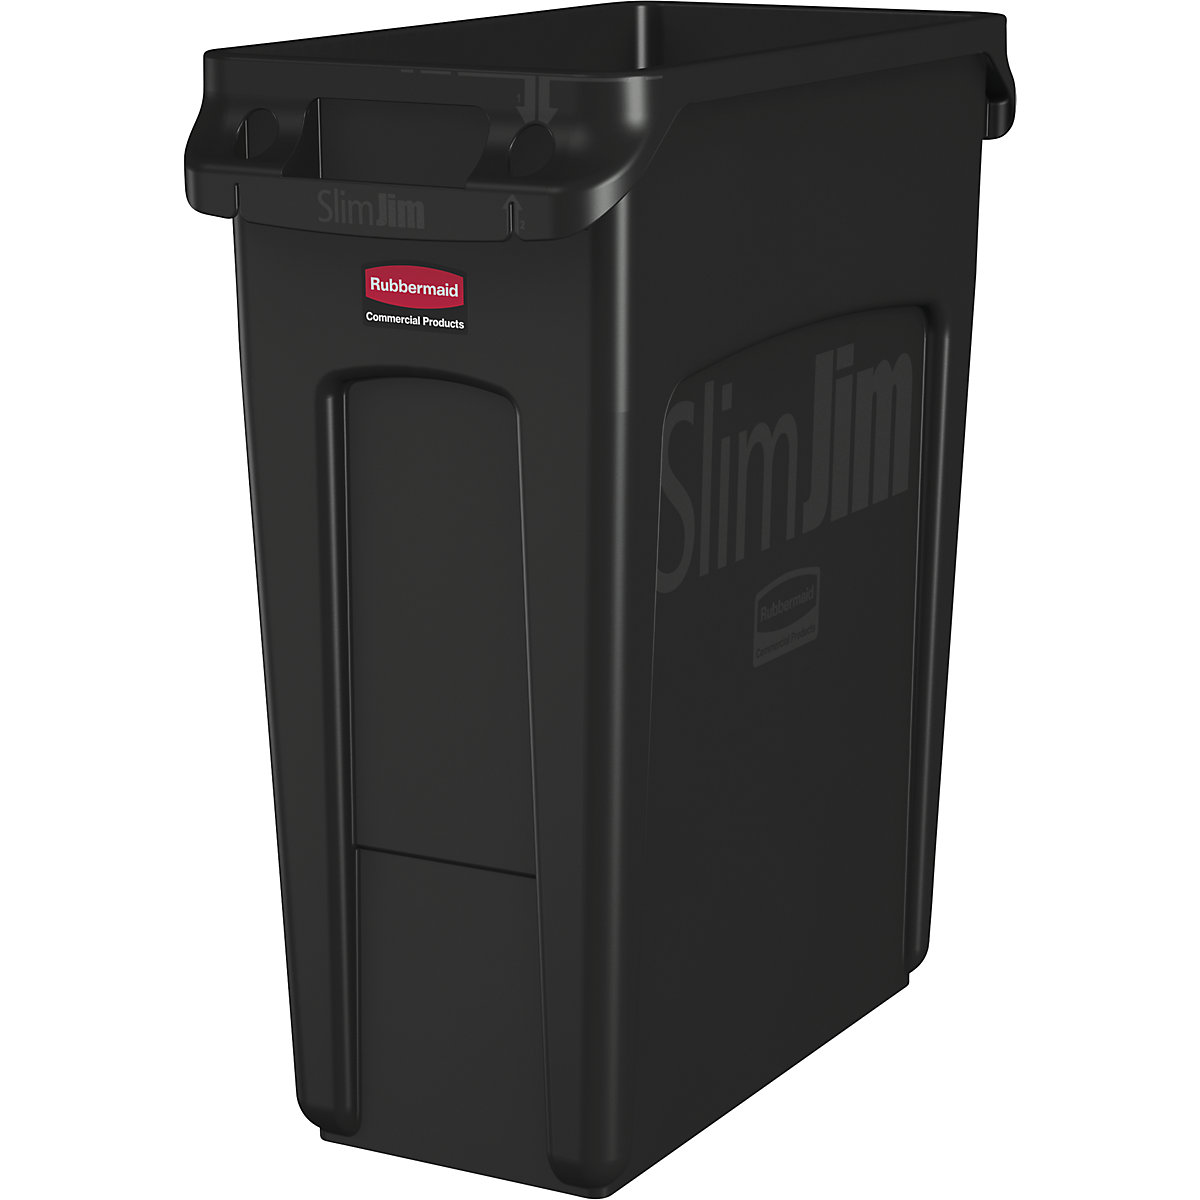 Spremnik za sirovine/kanta za otpad SLIM JIM® – Rubbermaid, volumen 60 l, s kanalima za ventilaciju, u crnoj boji, od 10 kom.-11